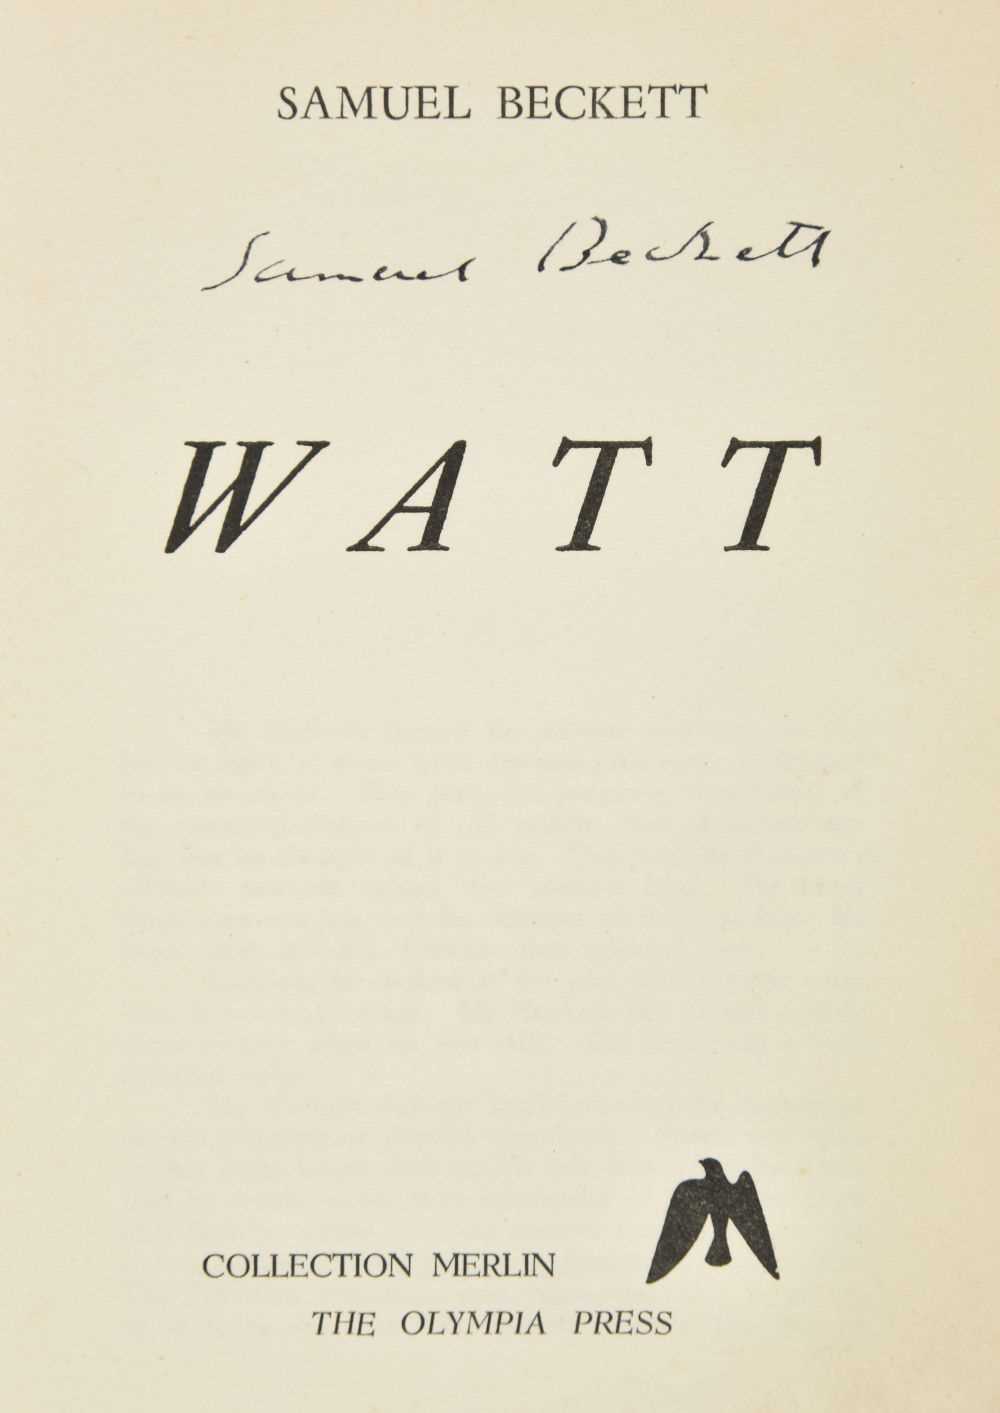 Lot 645 - Beckett (Samuel). Watt, Olympia Press, 1953, signed